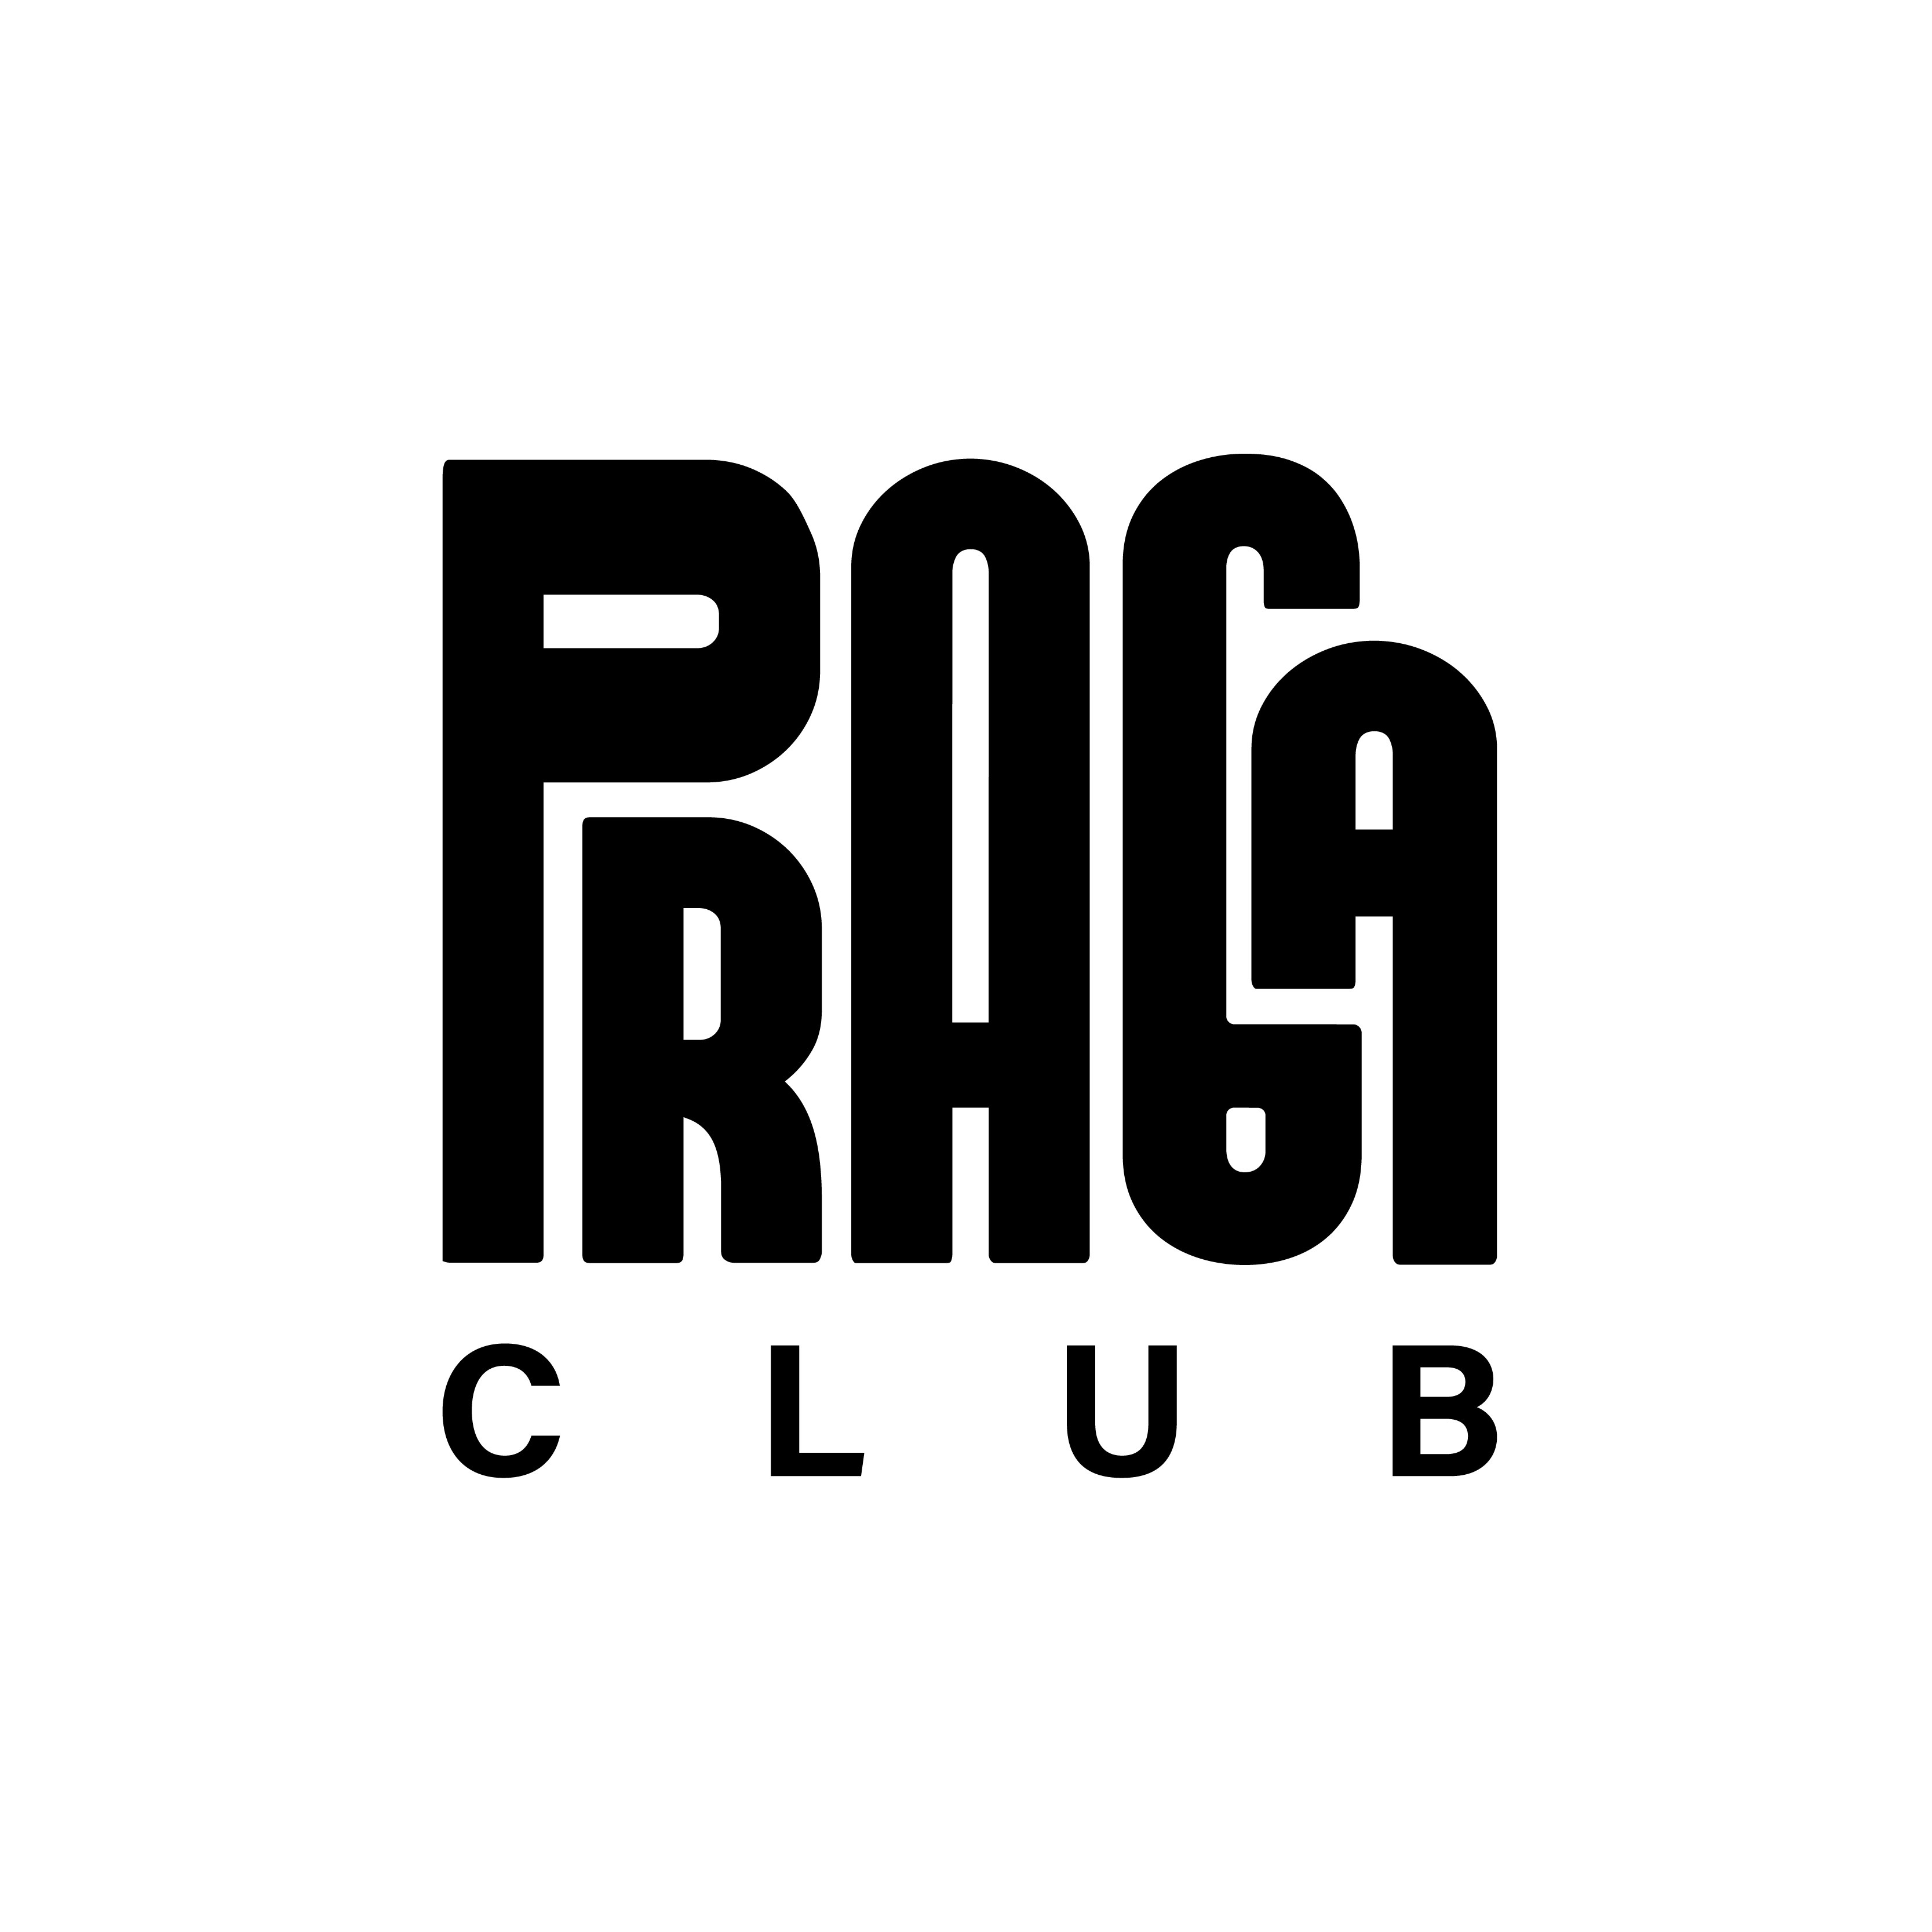 Praga Club